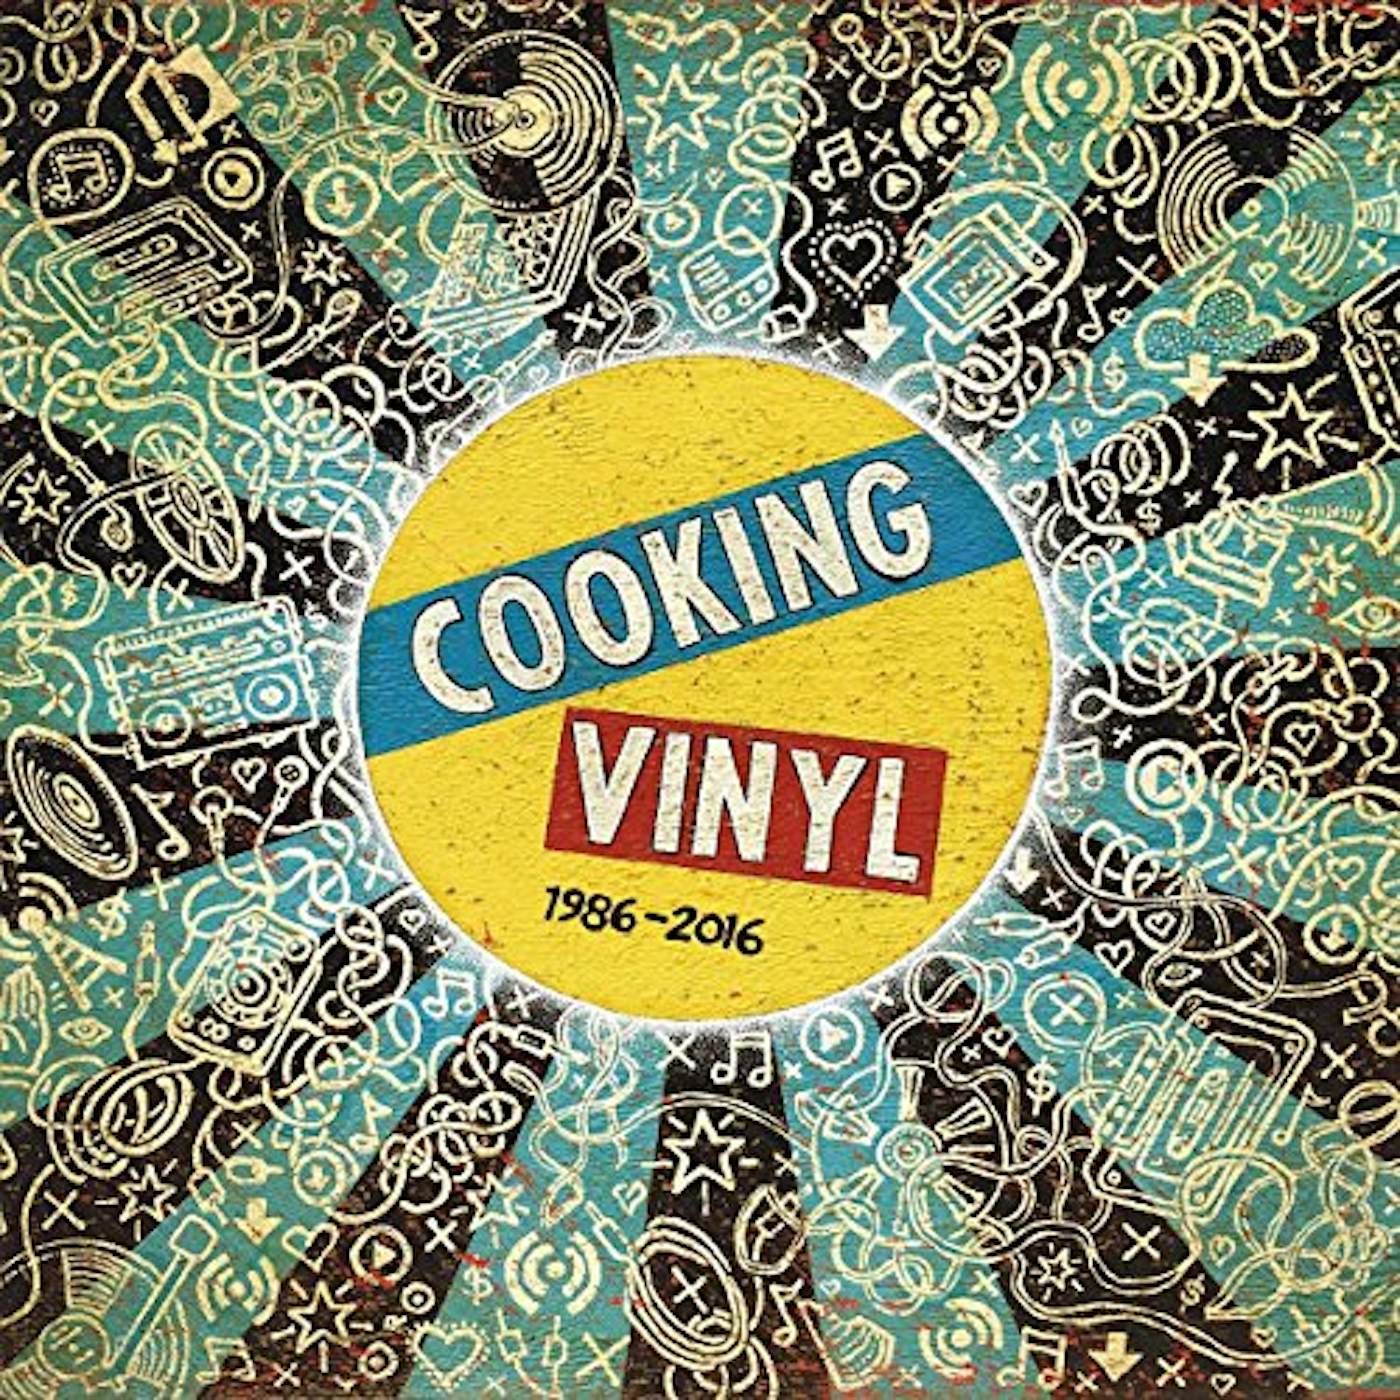 COOKING VINYL 1986-2016 / VARIOUS Vinyl Record Box Set